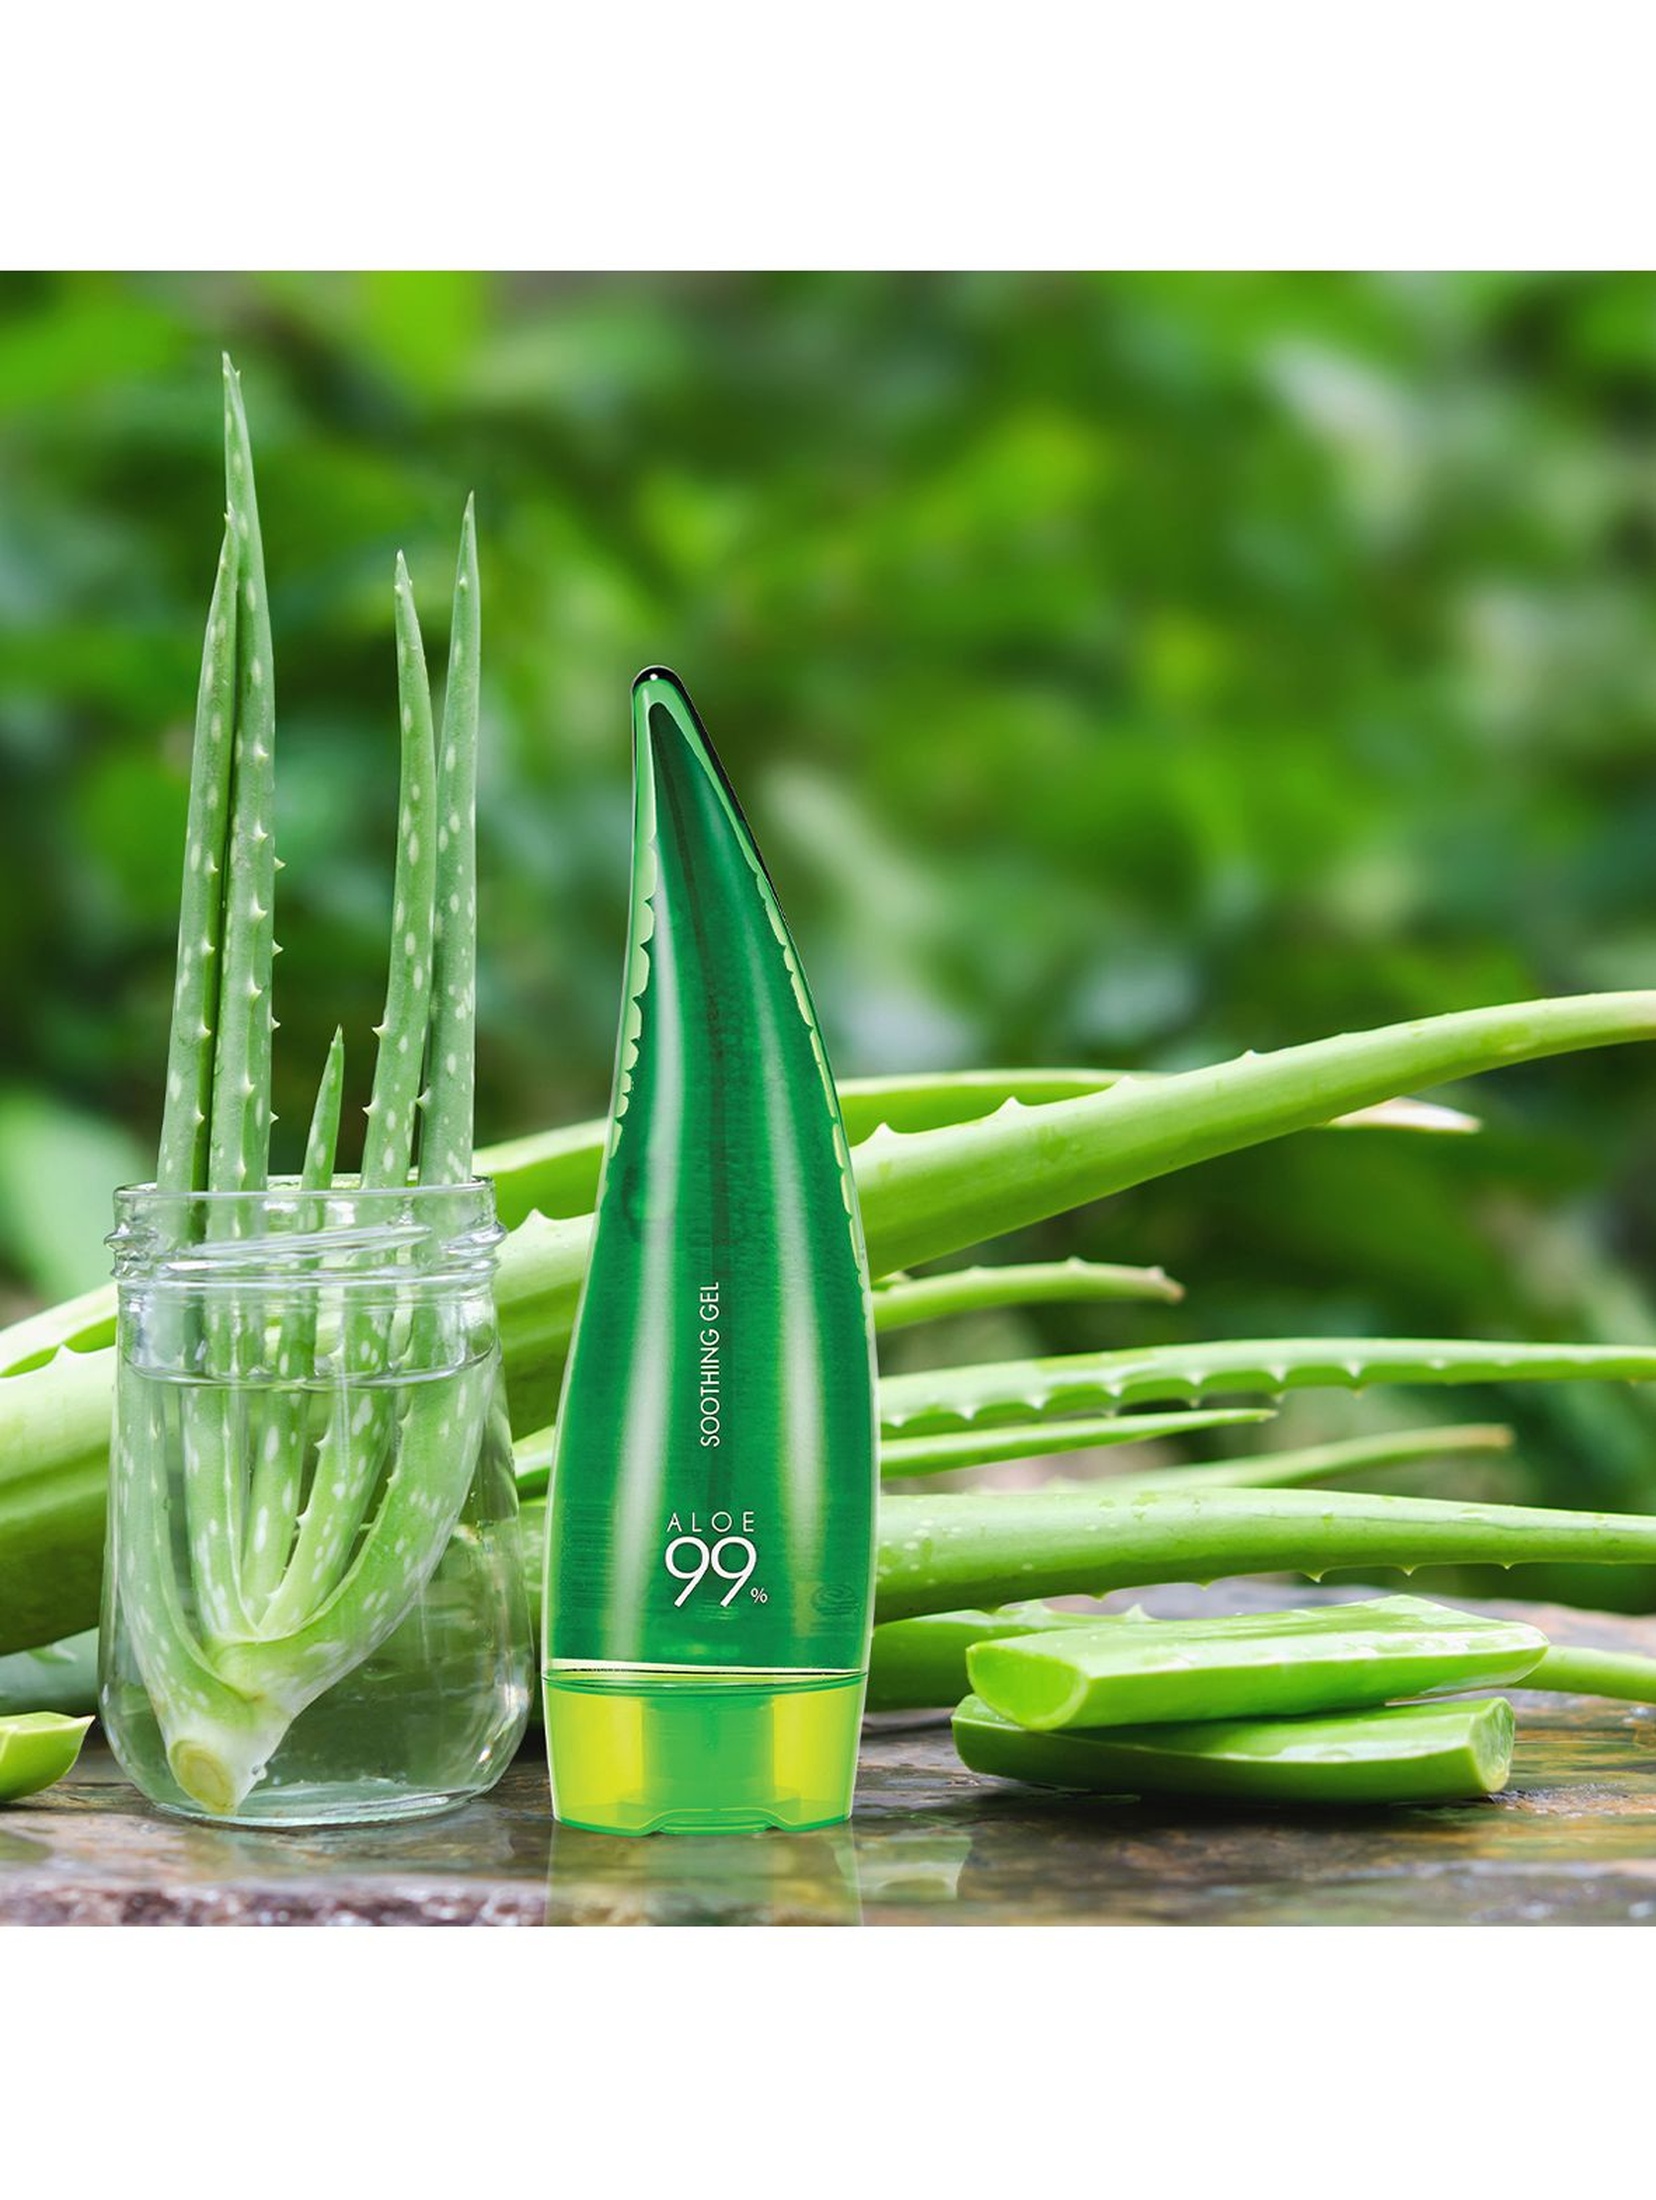 Holika Holika Aloe 99% Soothing Gel wielofunkcyjny żel aloesowy - 250ml